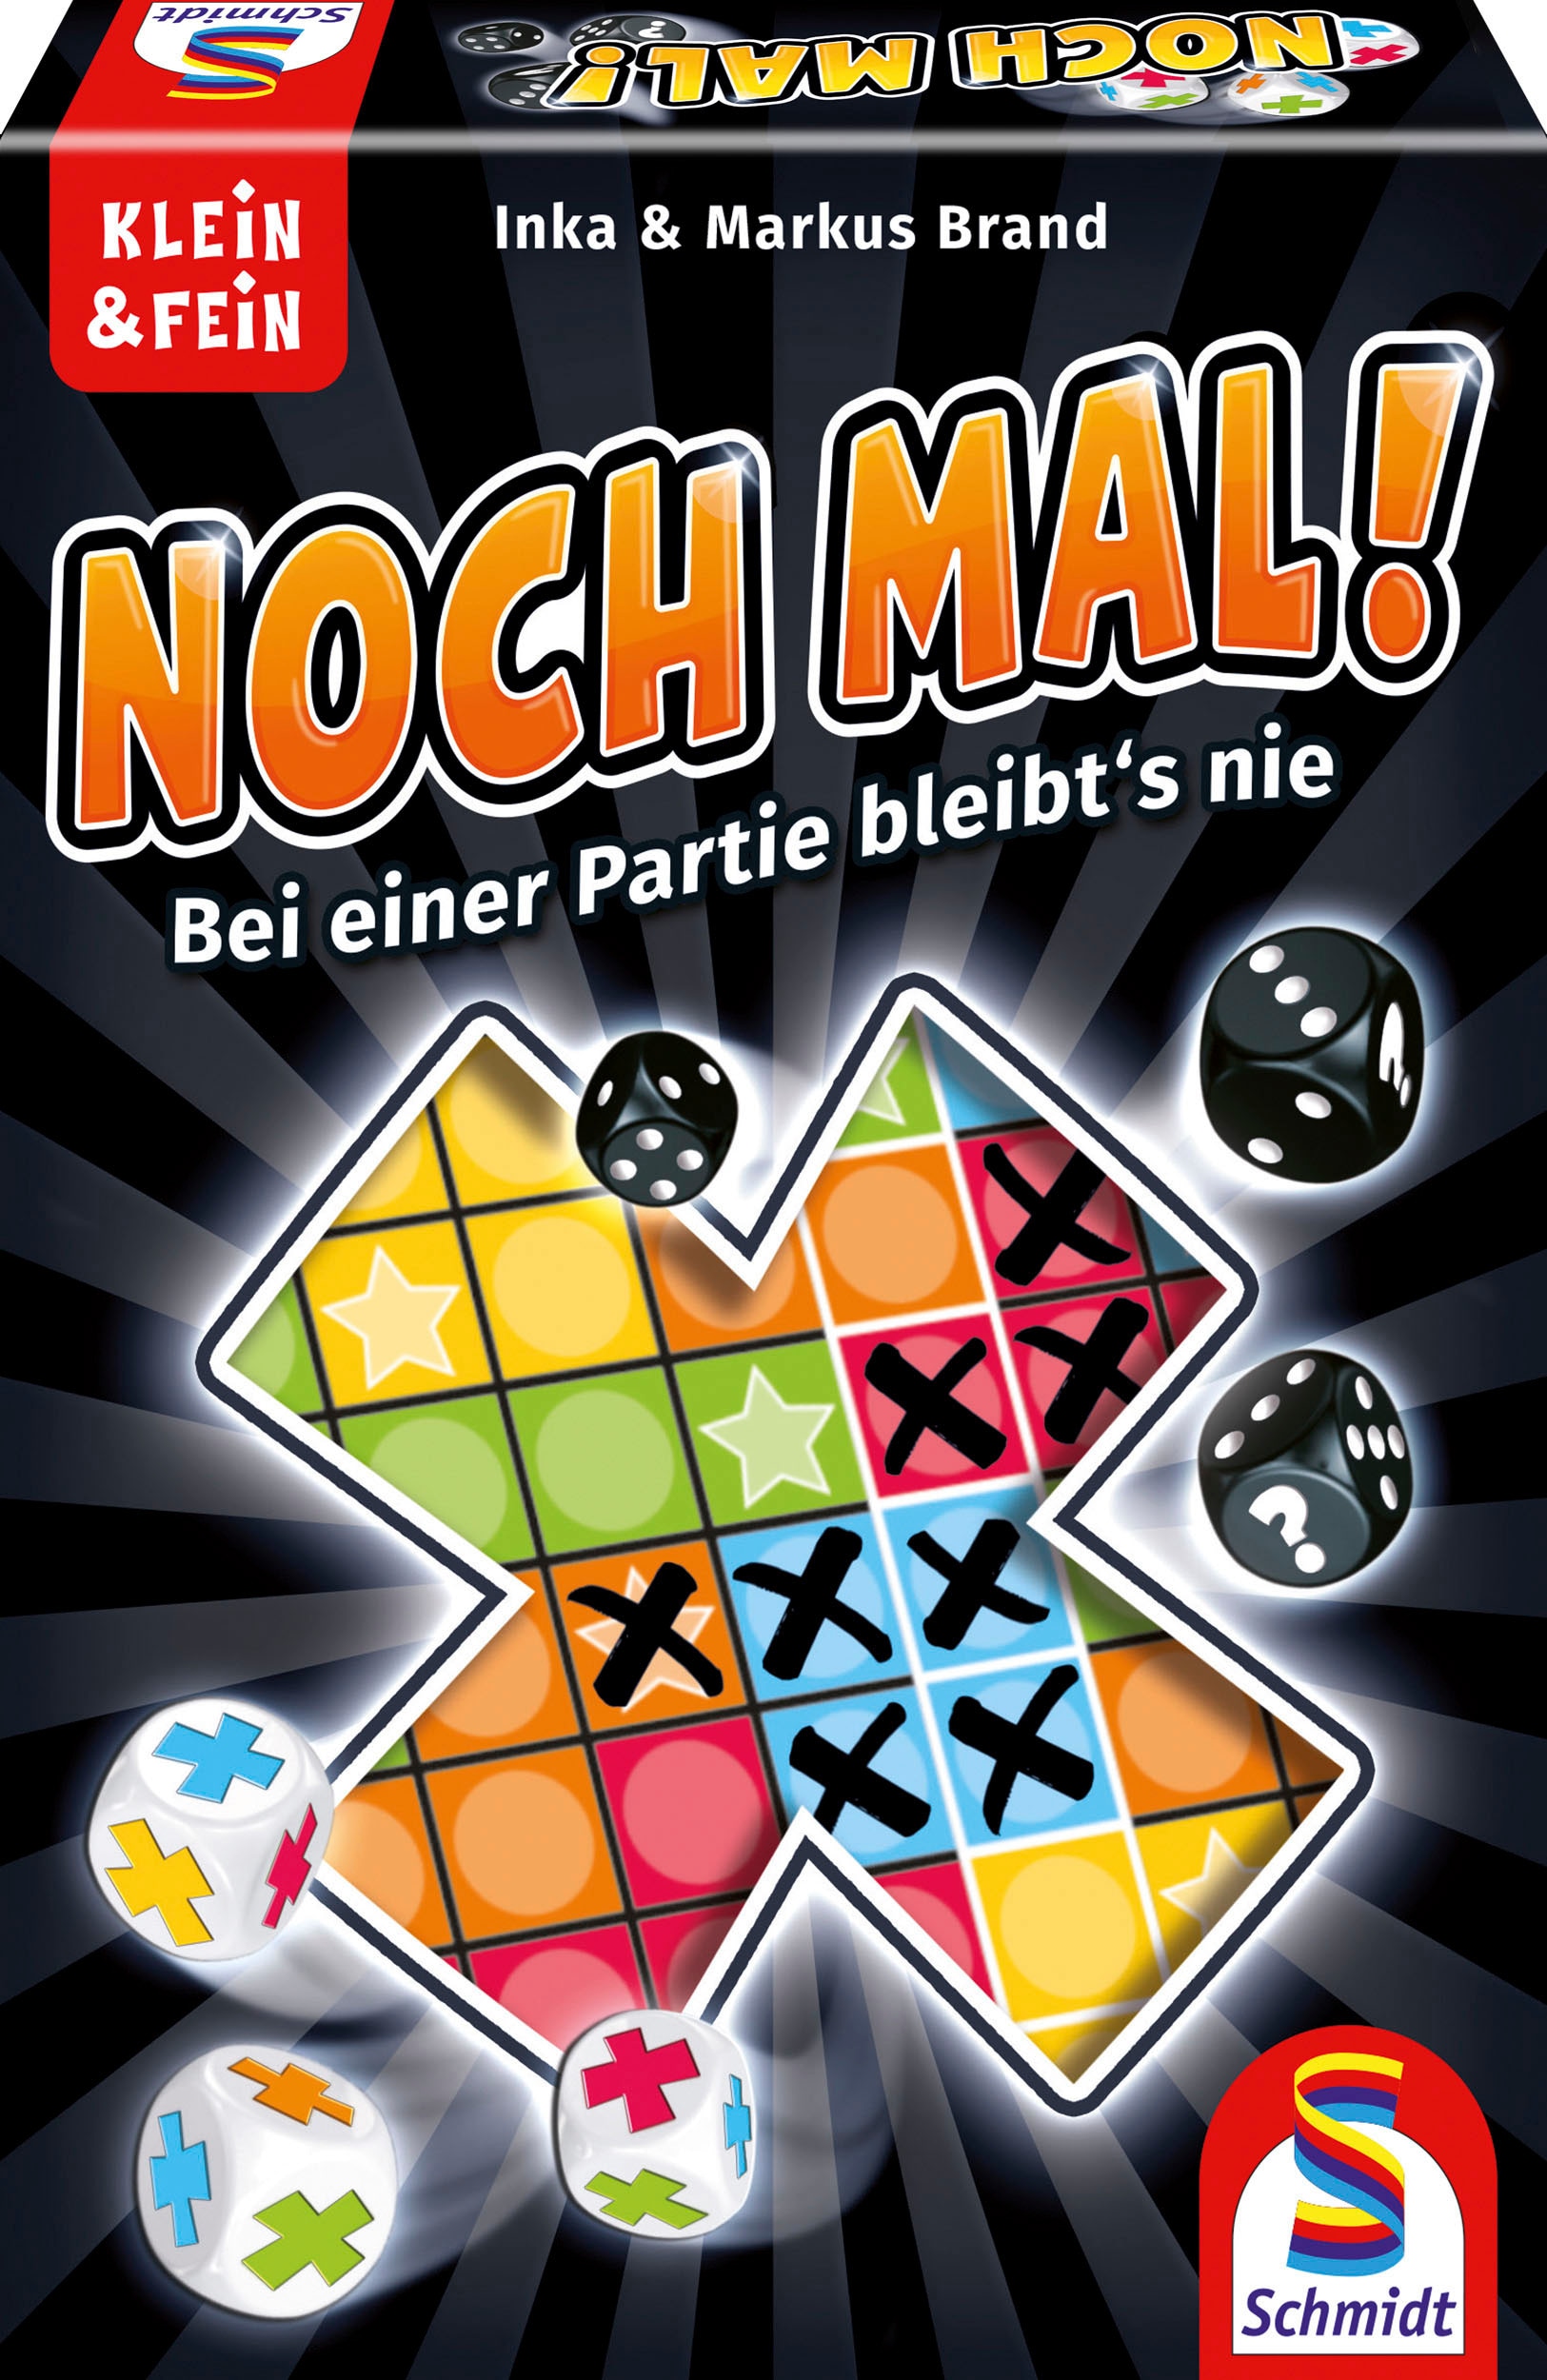 Schmidt Spiele Spiel »Noch mal!«, Made in Germany